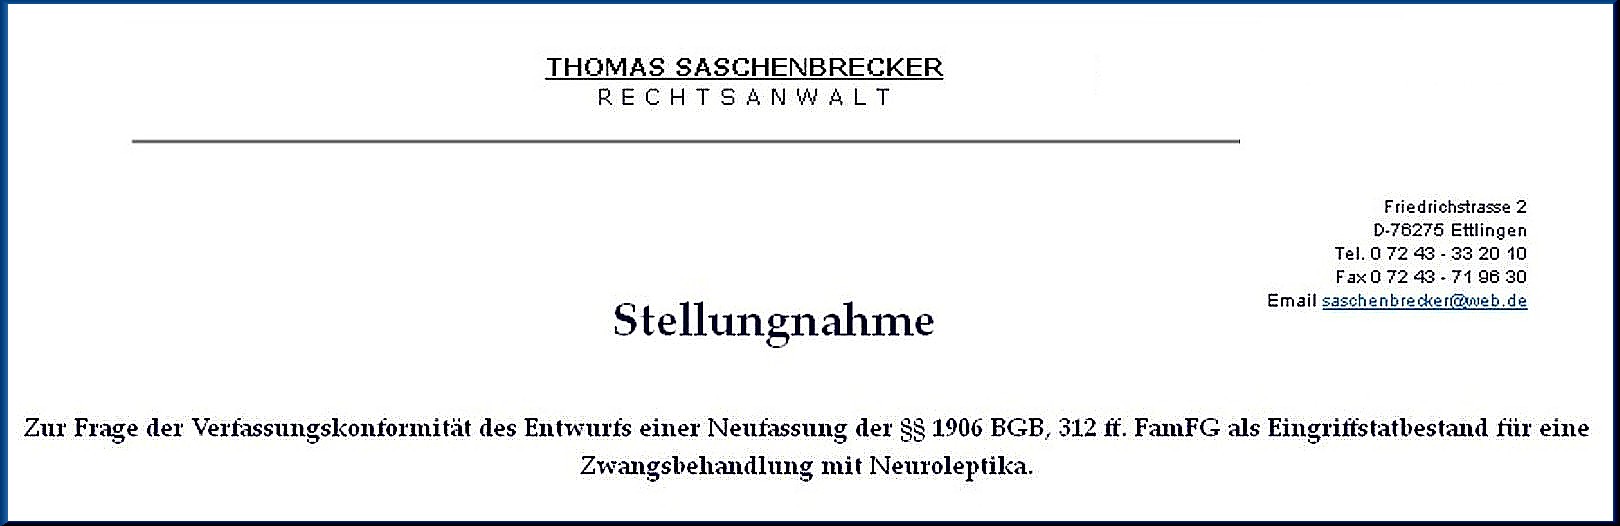 Rechtsgutachten Rechtsanwalt Thomas Saschenbrecker